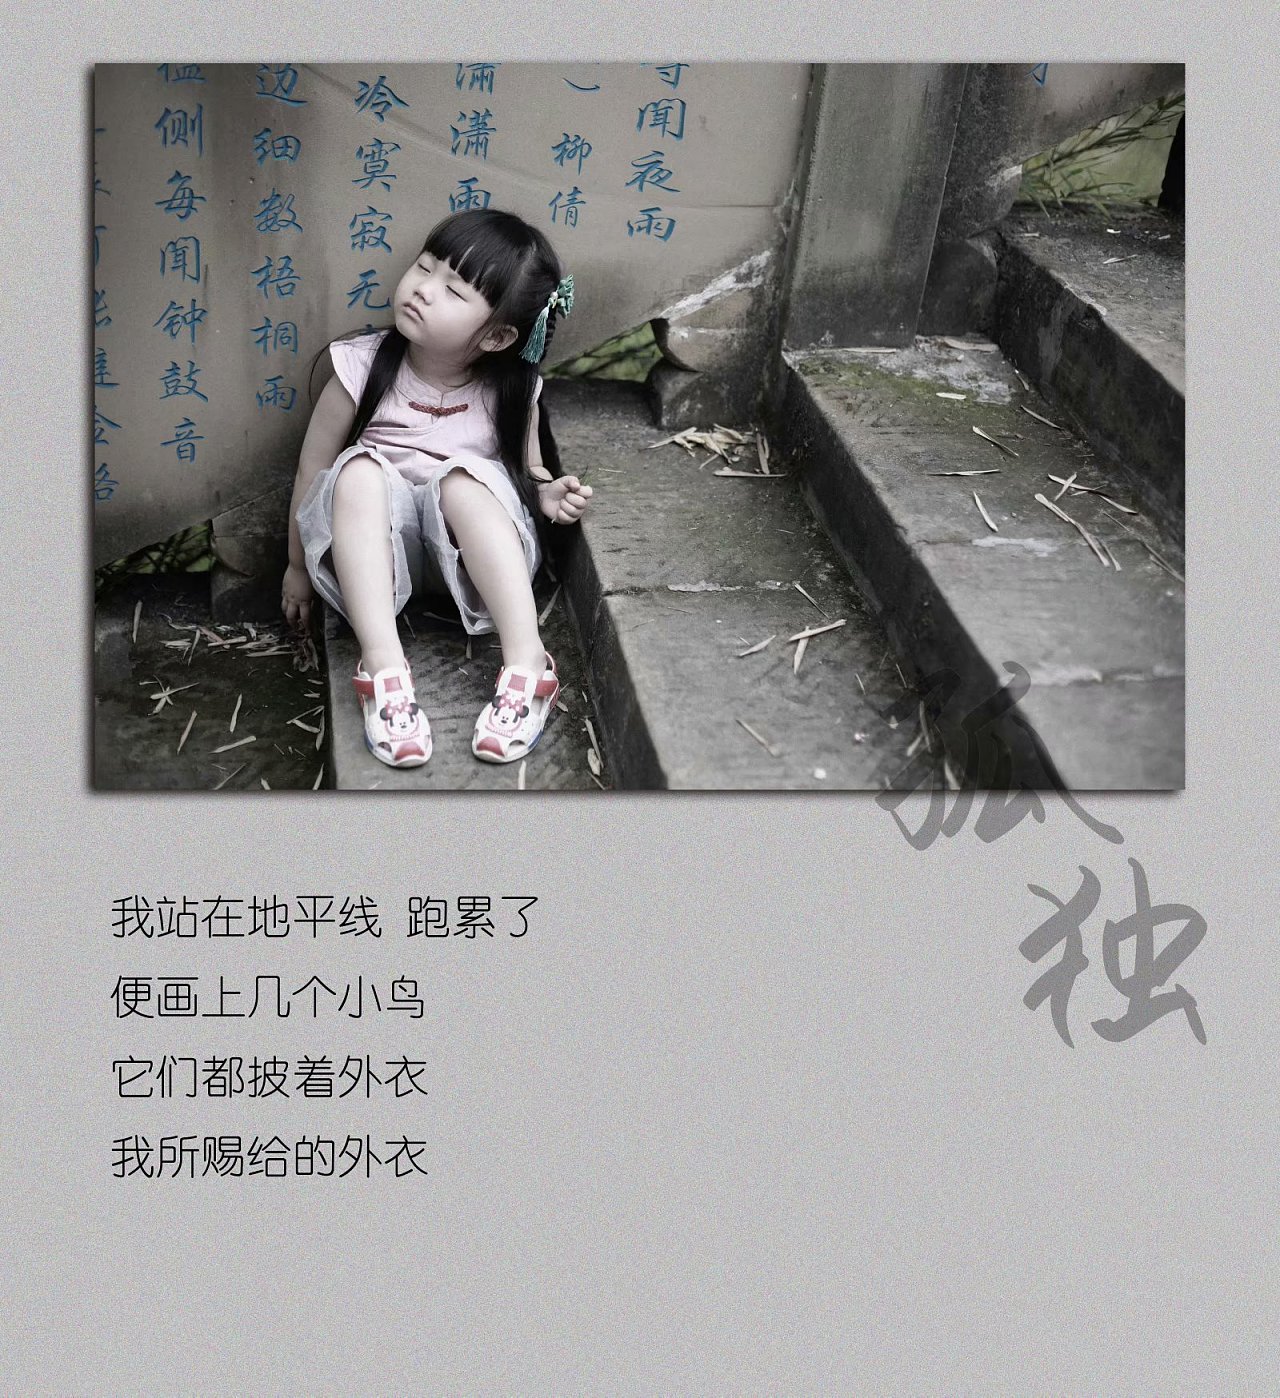 孤独伤心的女孩高清壁纸-壁纸下载-www.pp3.cn